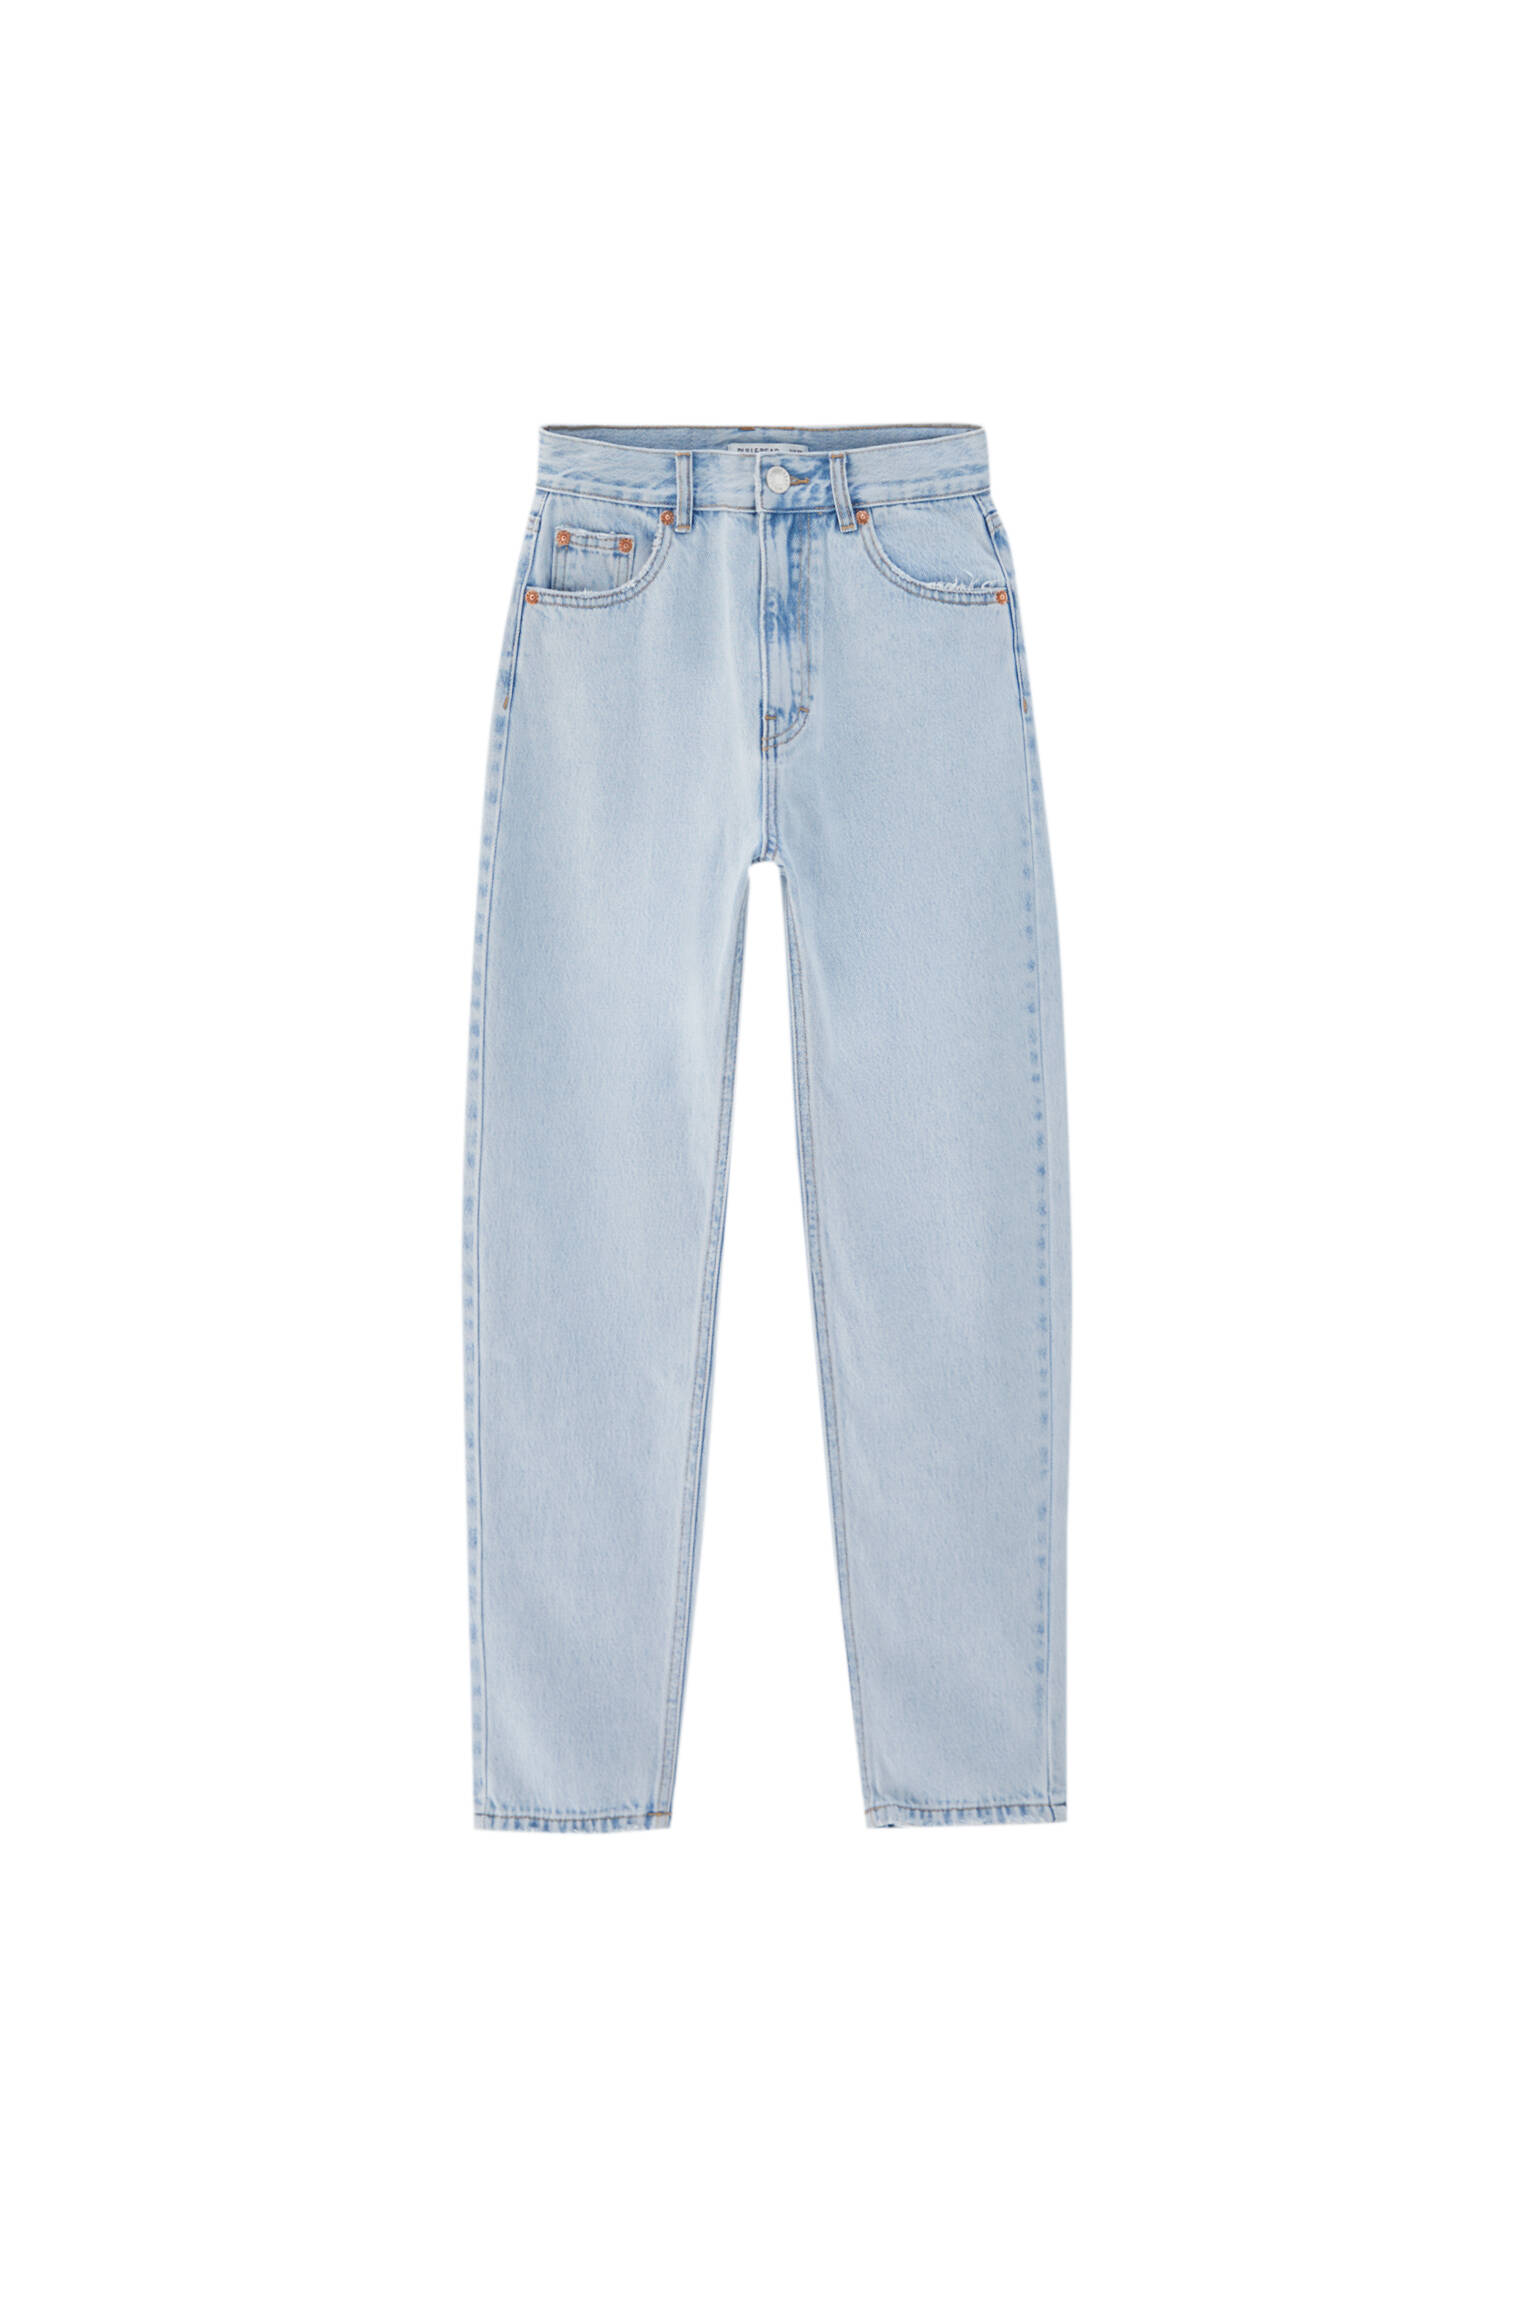 Базовые джинсы mom fit - органический хлопок (не менее 50%) ЛИНЯЛЫЙ СИНИЙ Pull & Bear